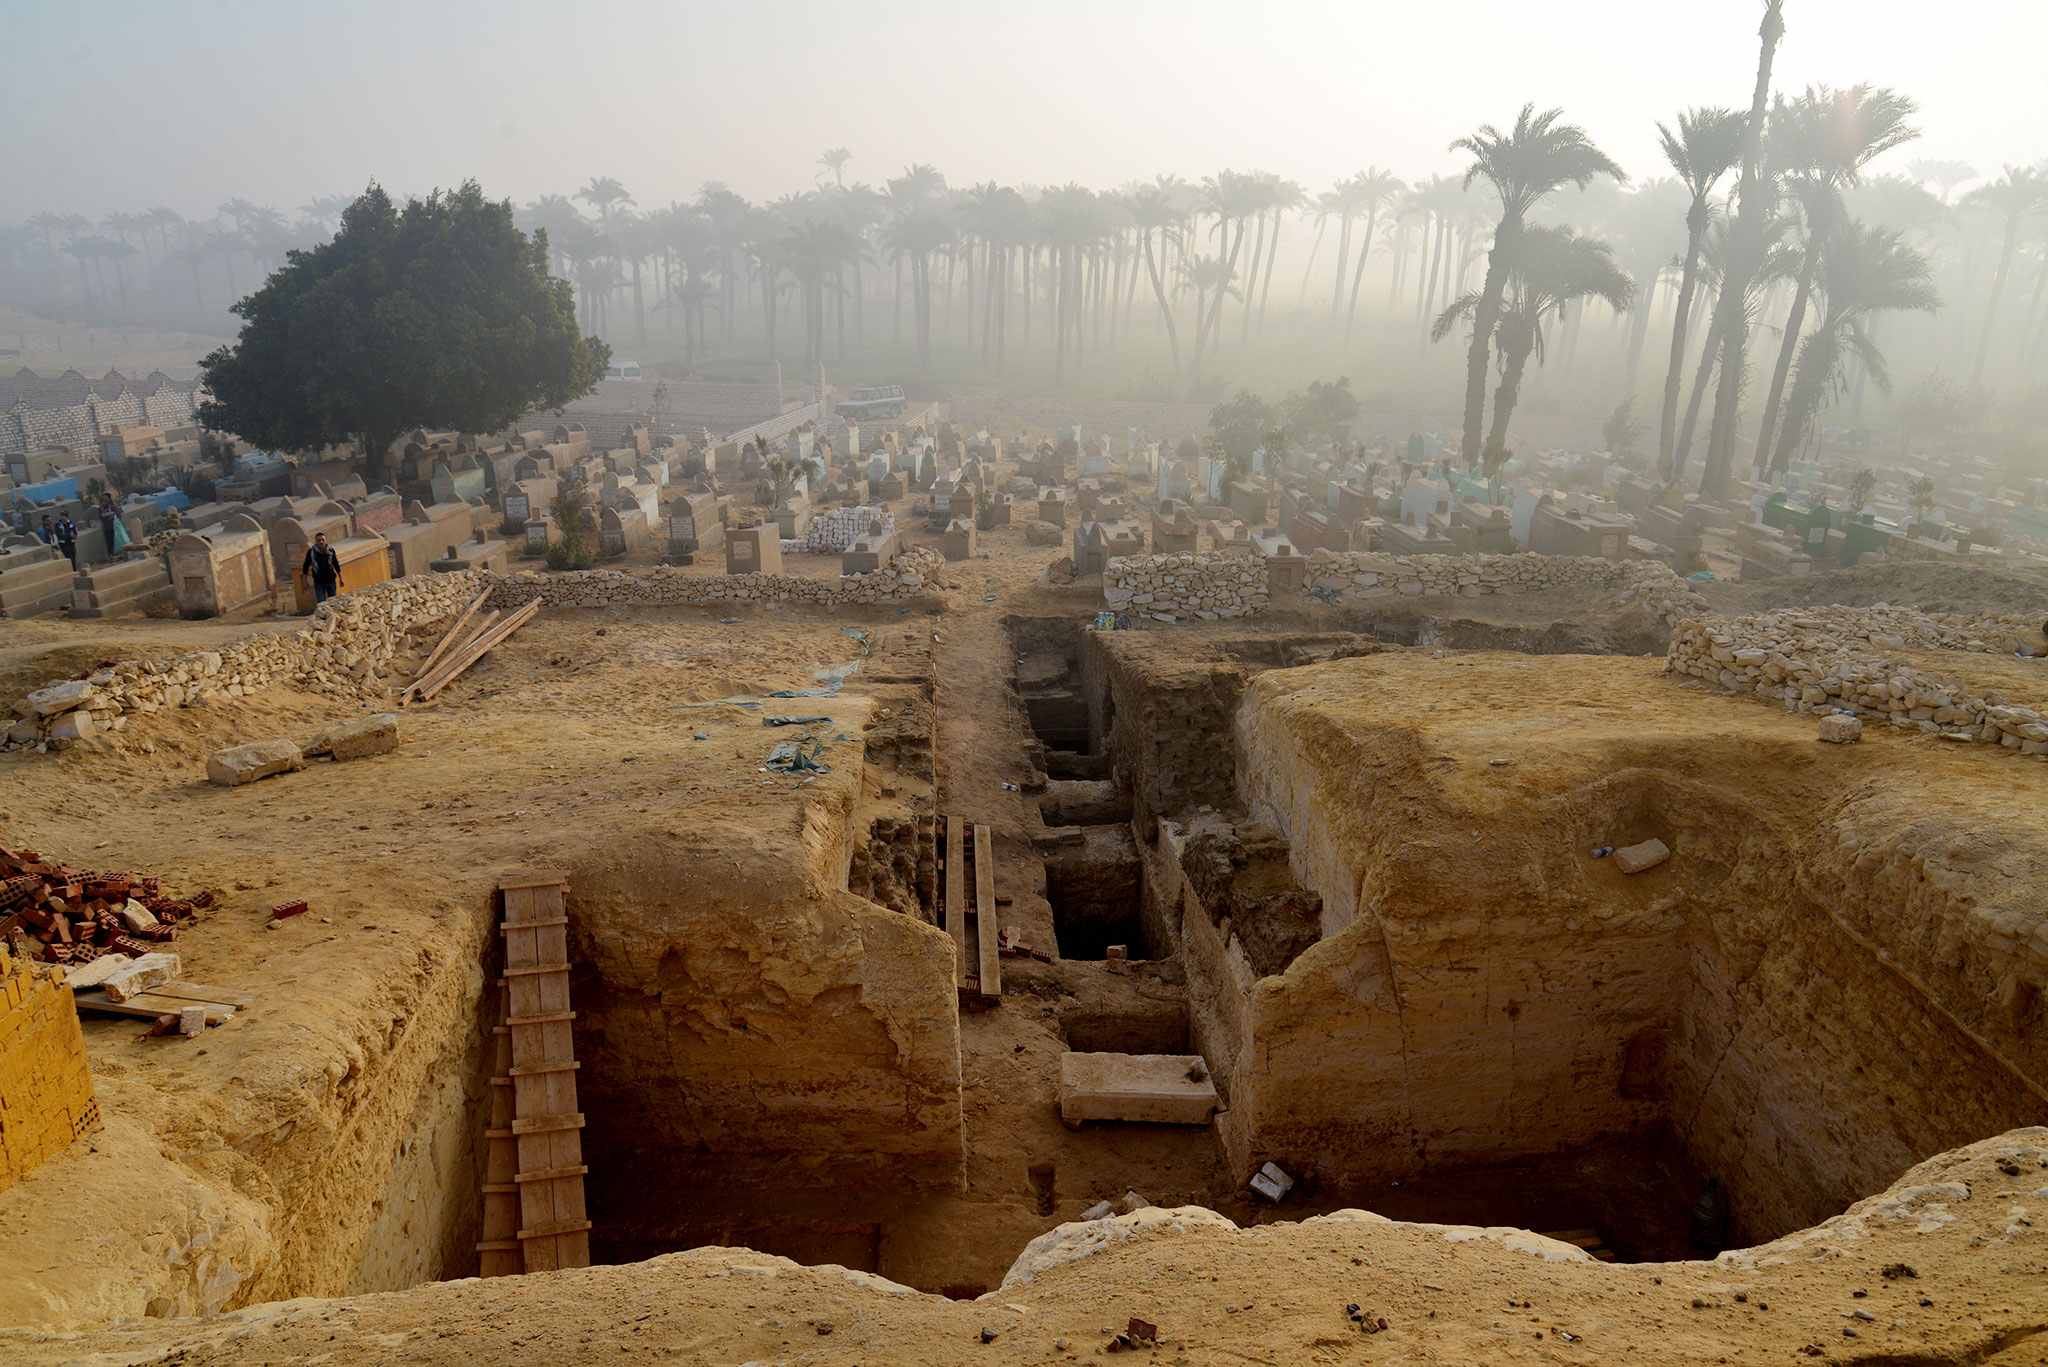 802 τάφοι και το «Βιβλίο των Νεκρών» ανακαλύφθηκαν στη νεκρόπολη του Λιστ στην Αίγυπτο 1